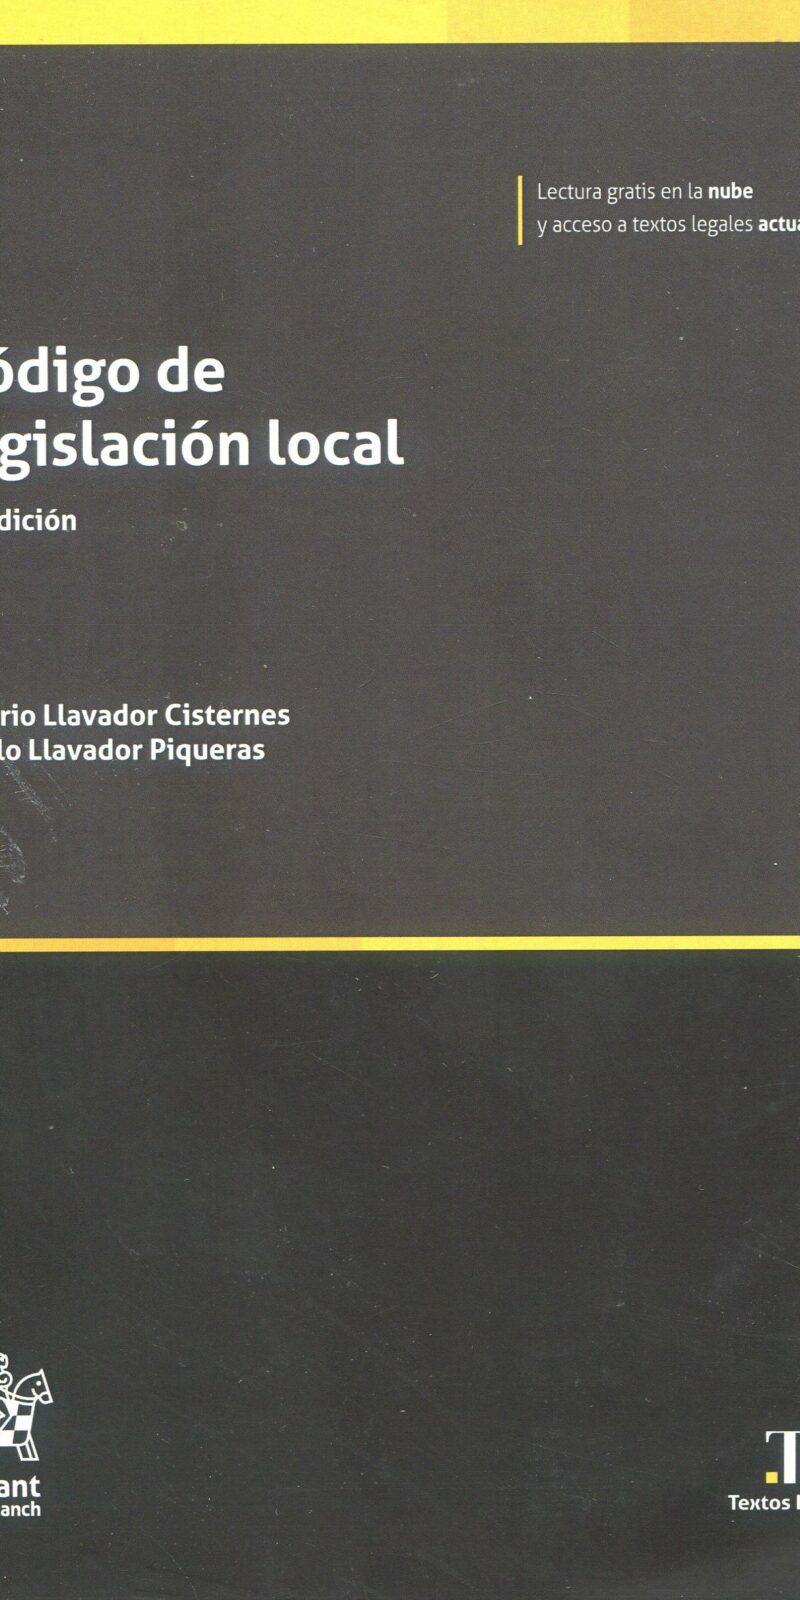 Código de legislación local 9788411694391